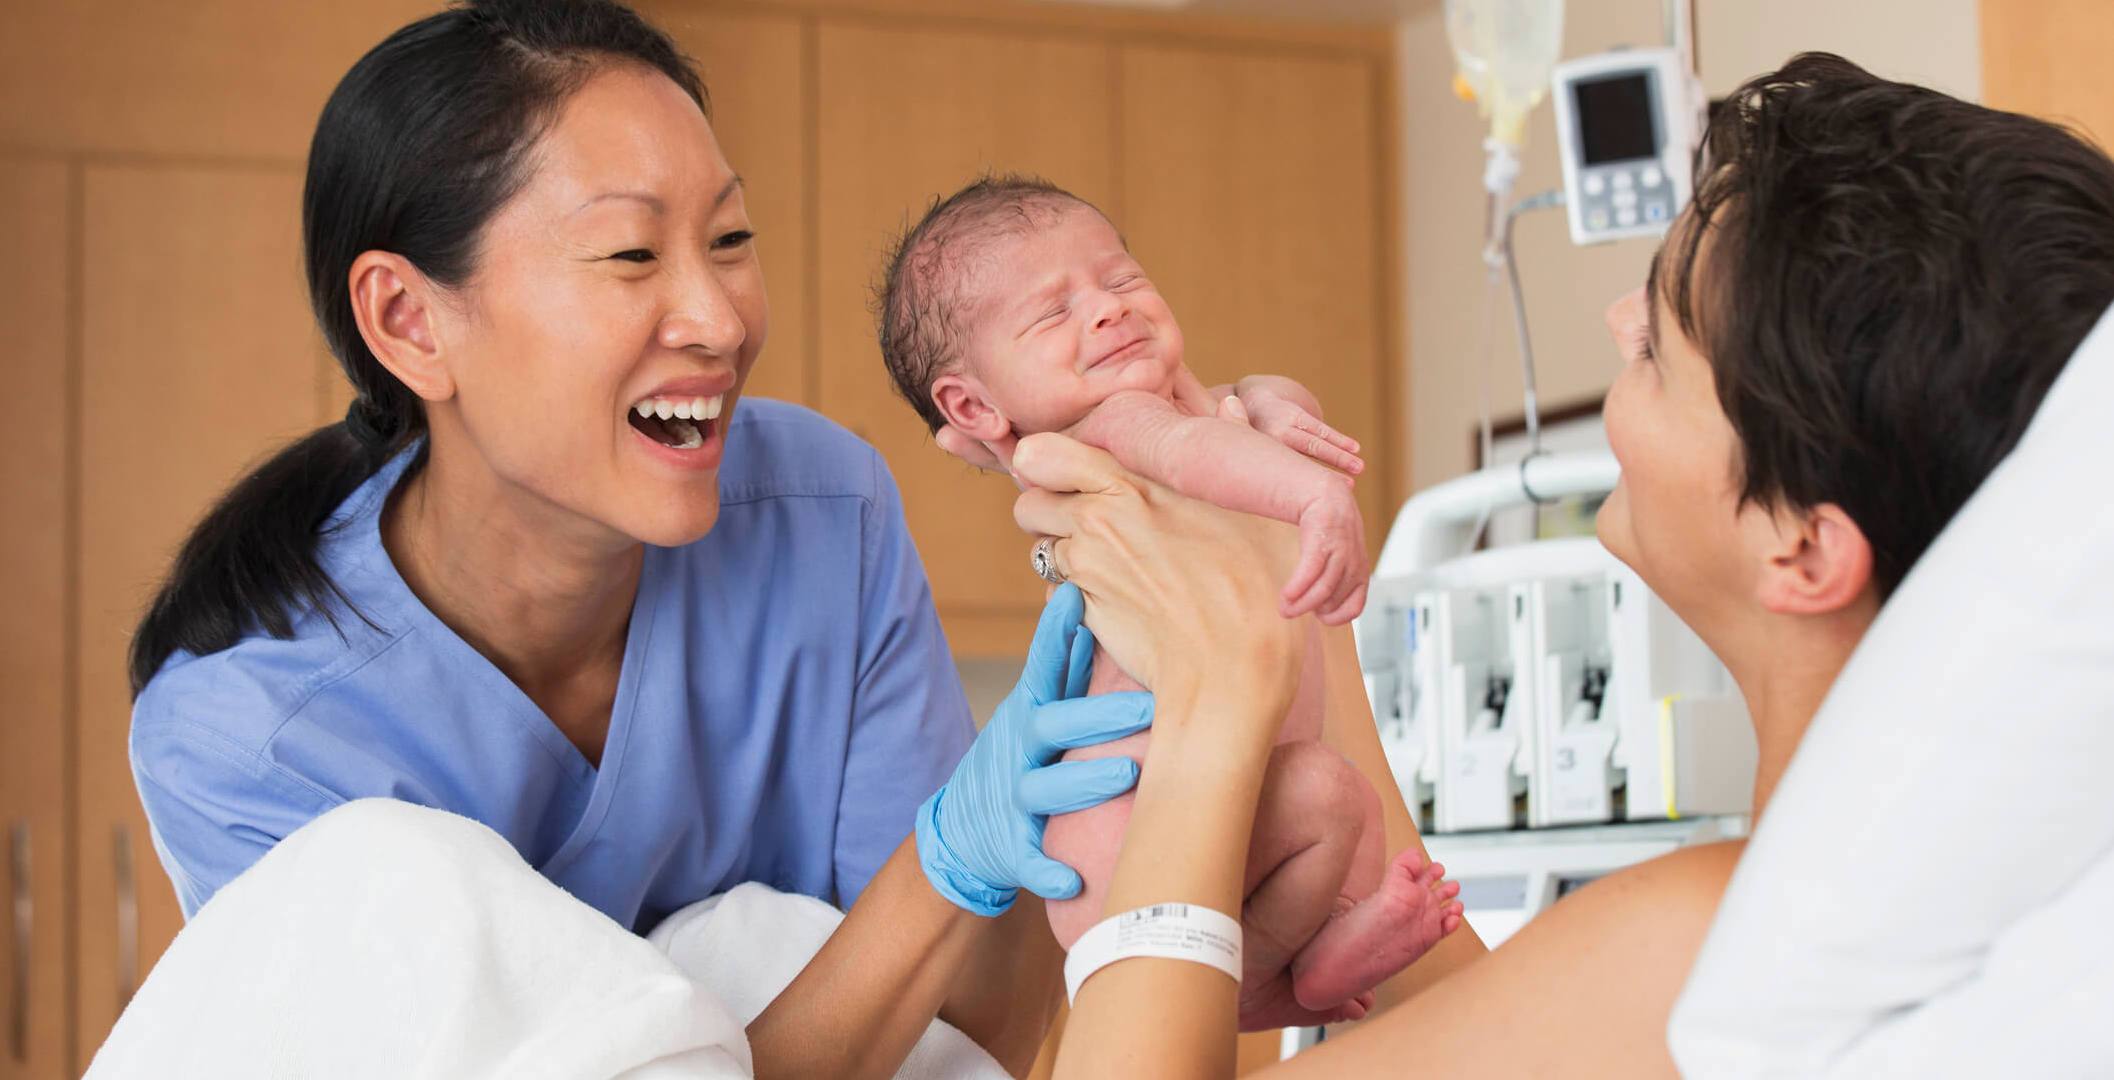 midwifery phd programs